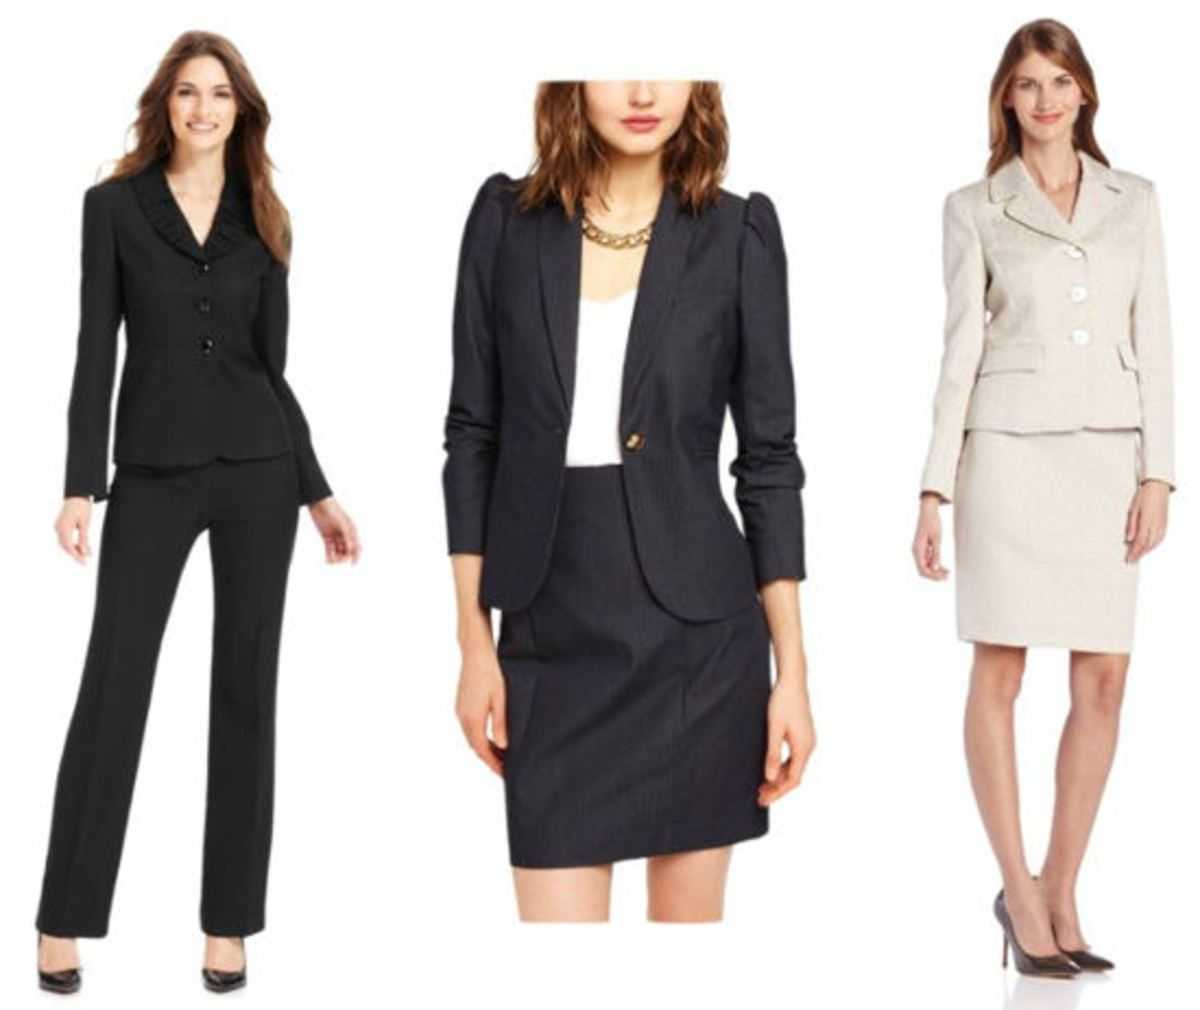 Официально-деловой стиль одежды женщин: правила корпоративного дресс-кода